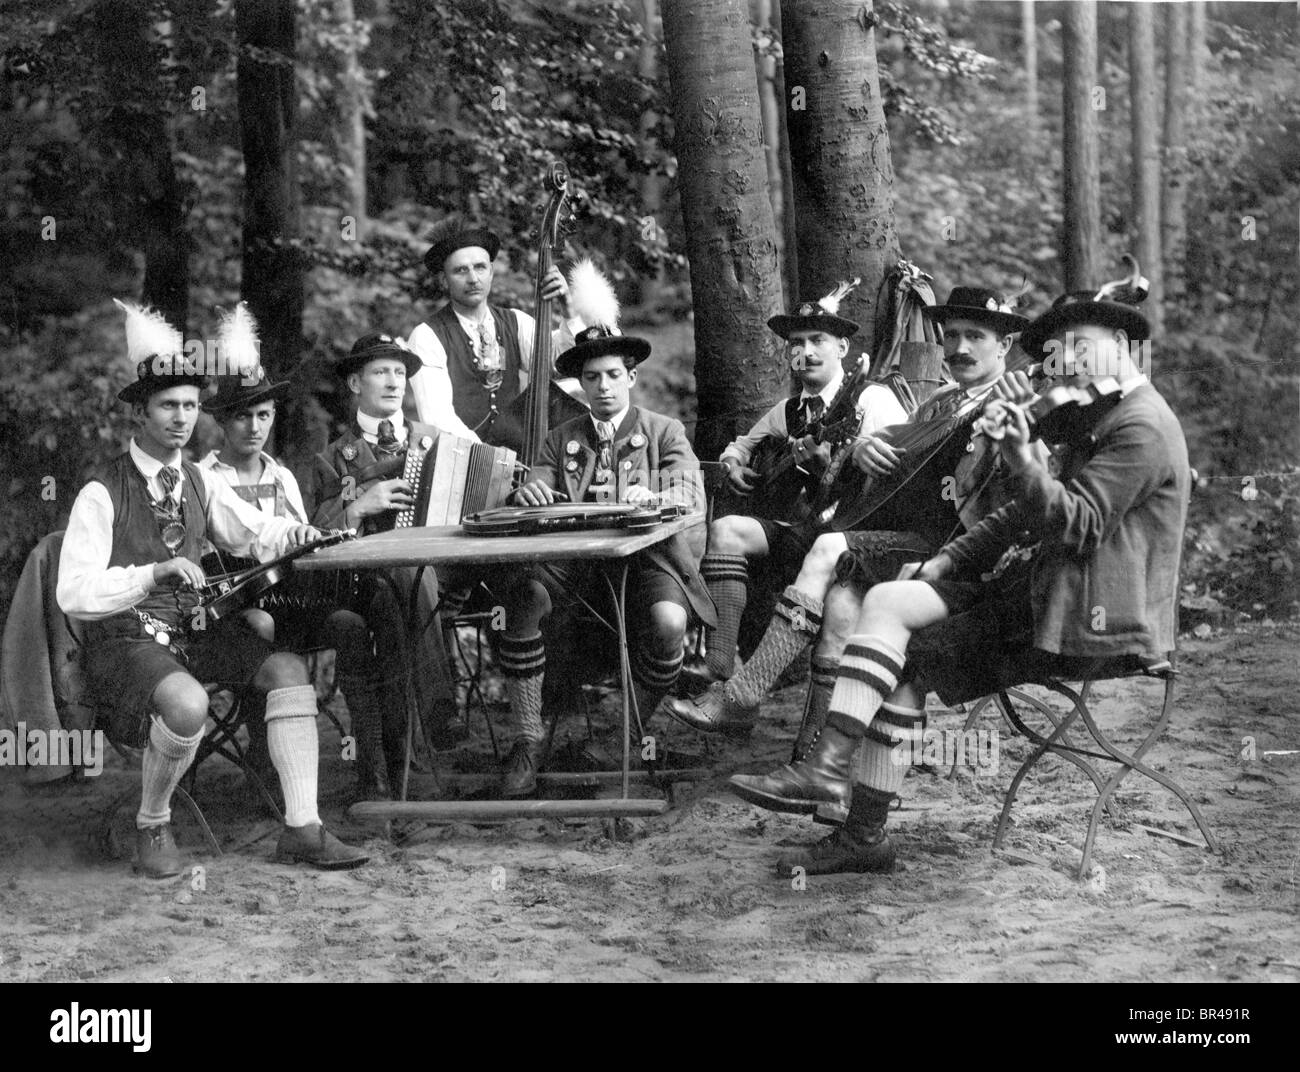 Imagen histórica, los músicos folklóricos, ca. 1922 Foto de stock